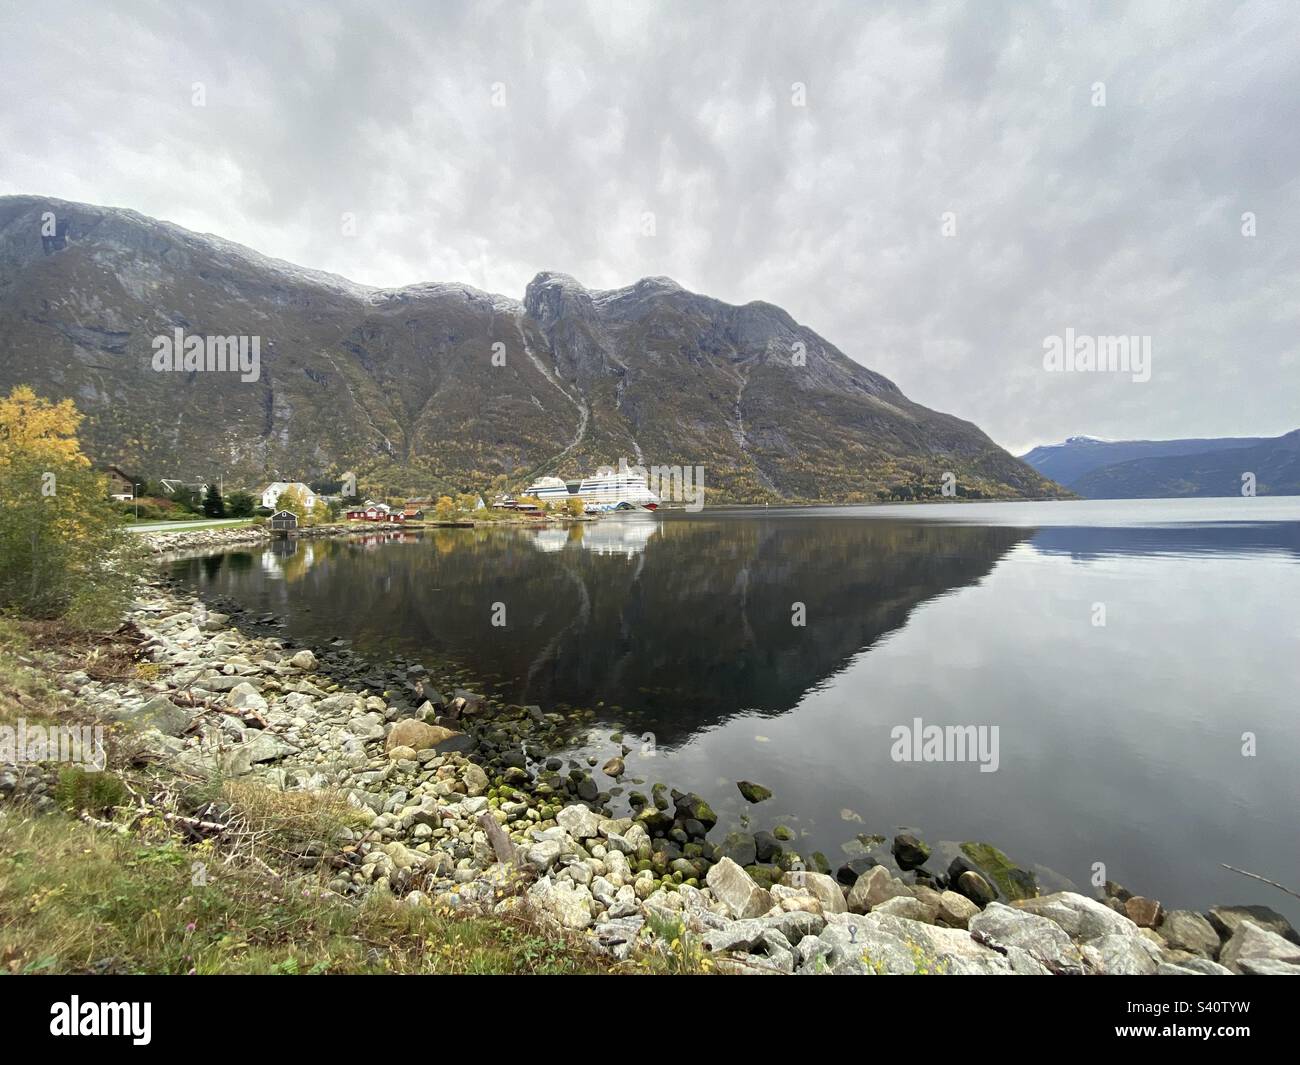 Berglischer Fjord mit Kreuzfahrtschiff in wunderschöner Bergkulisse Foto Stock